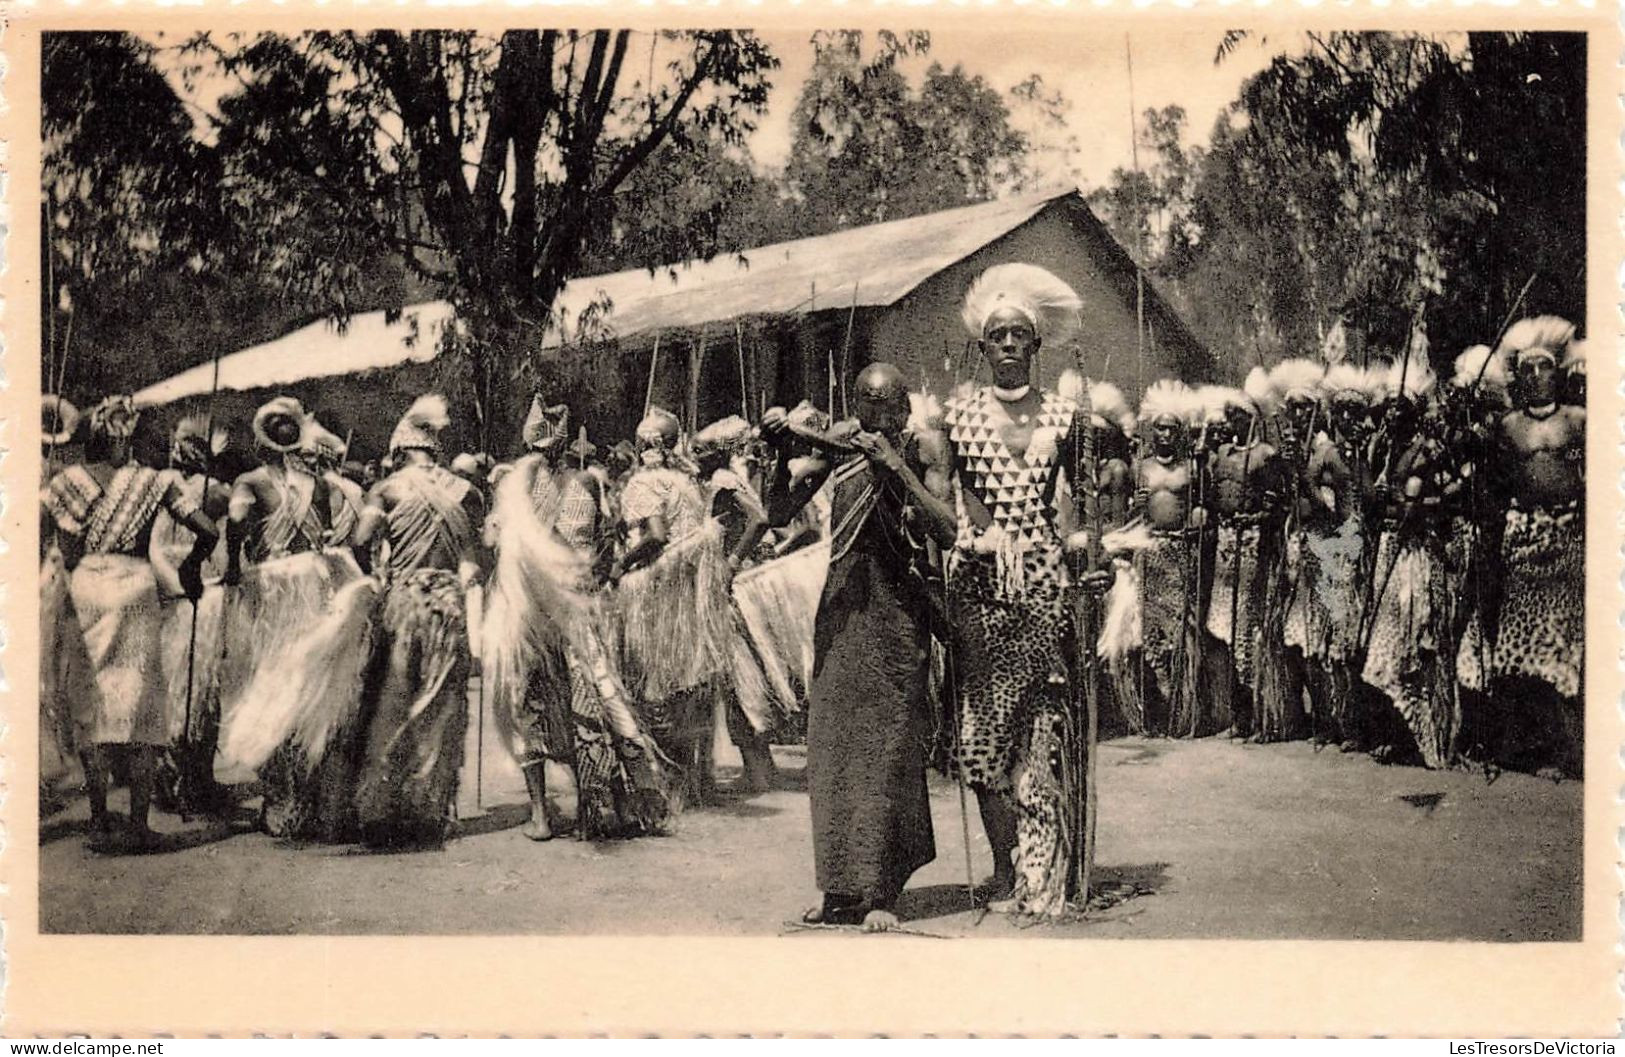 RUANDA-URUNDI - Danseurs Intores à Kitega (Urundi) - "Intore" Dansers Te Kitega (Urundi) - Carte Postale Ancienne - Ruanda-Urundi